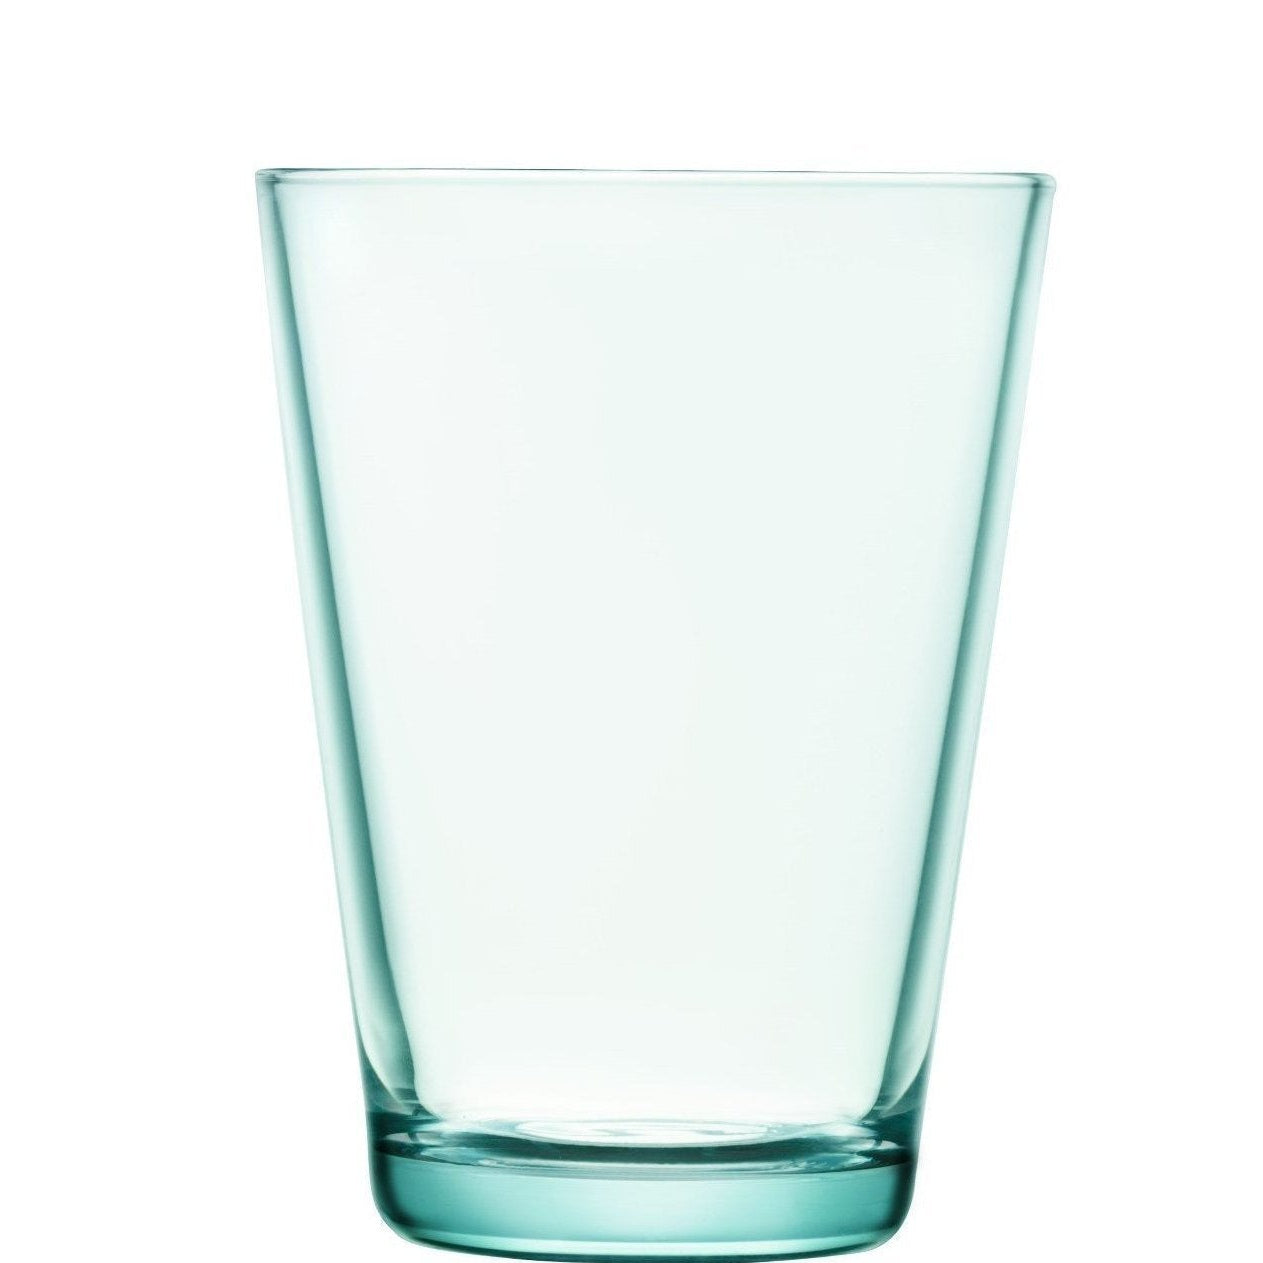 Iittala Kartio Glas Wassergrün 2Stck, 40cl-Wasserglas-Iittala-6411929510718-1008633-IIT-inwohn